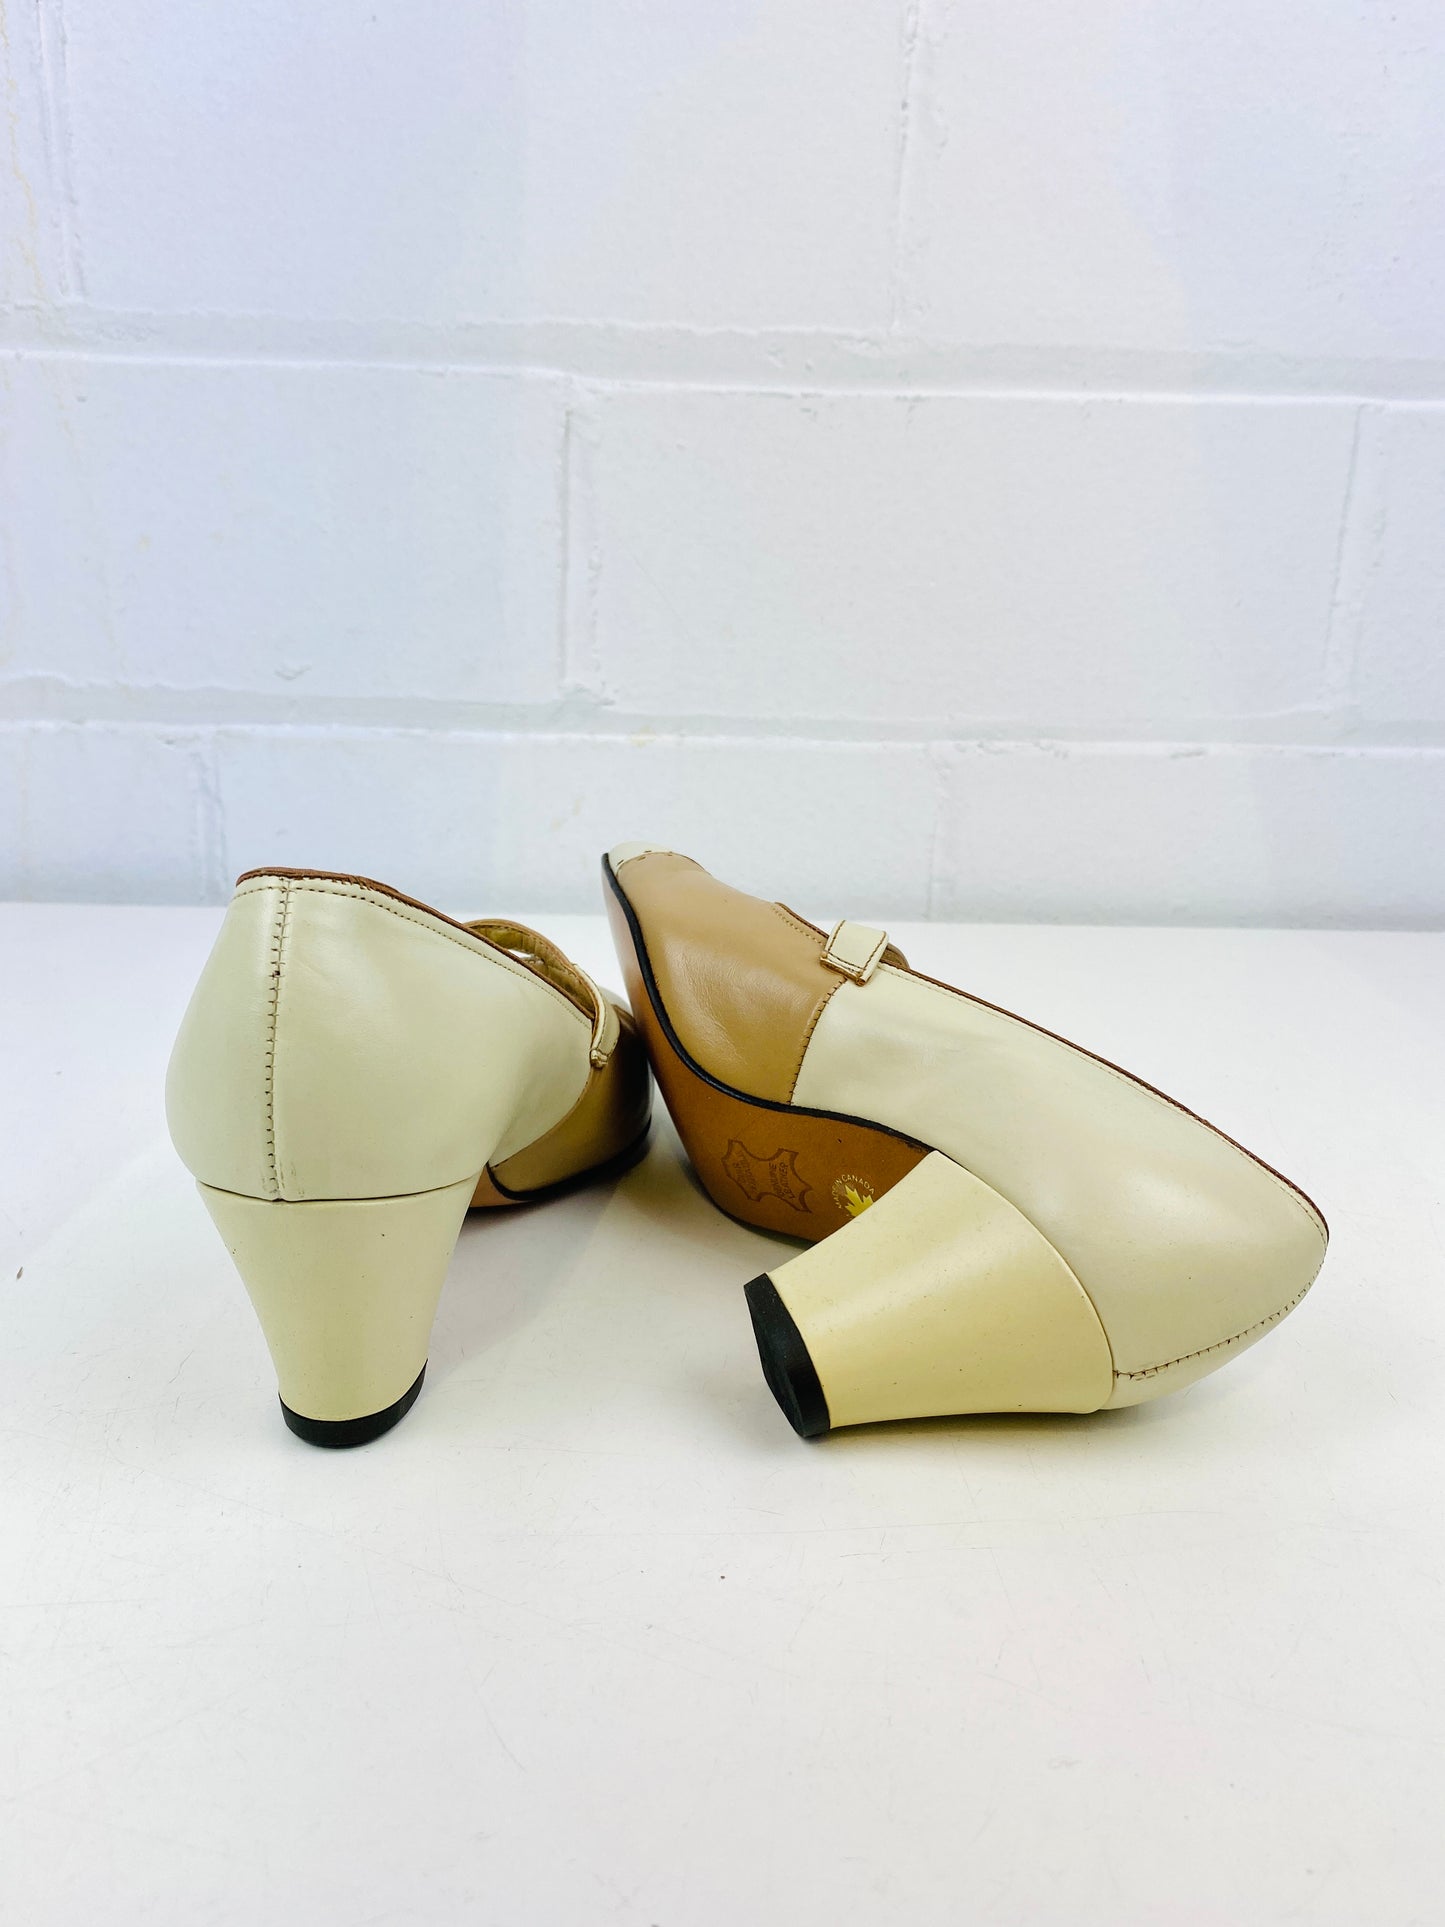 Vintage Deadstock Shoes, Women's 1980s Beige Leather Mid-Heel Pump's, NOS